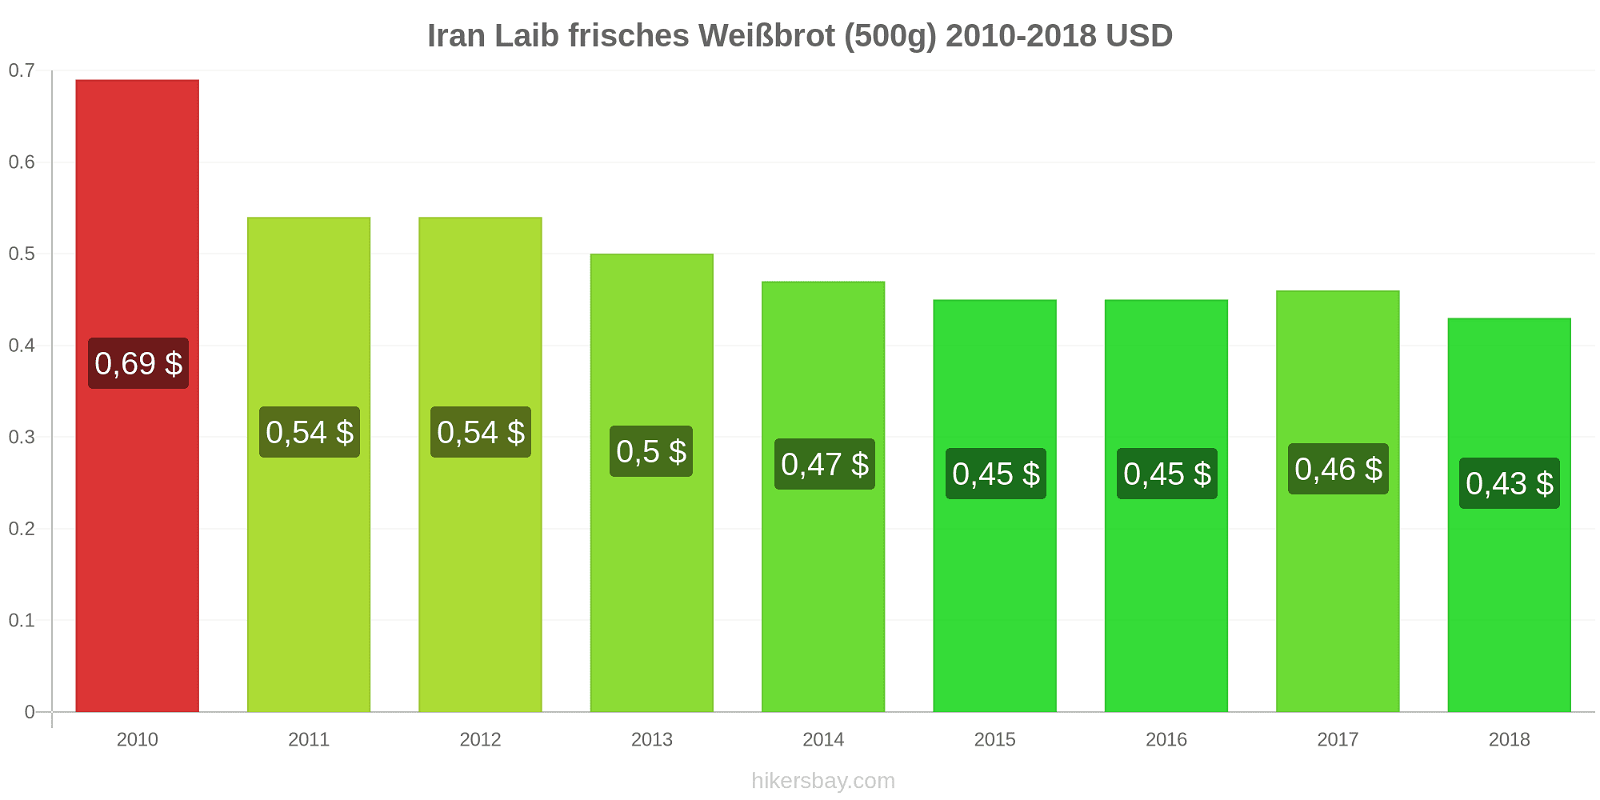 Iran Preisänderungen Ein Laib frisches Weißbrot (500g) hikersbay.com